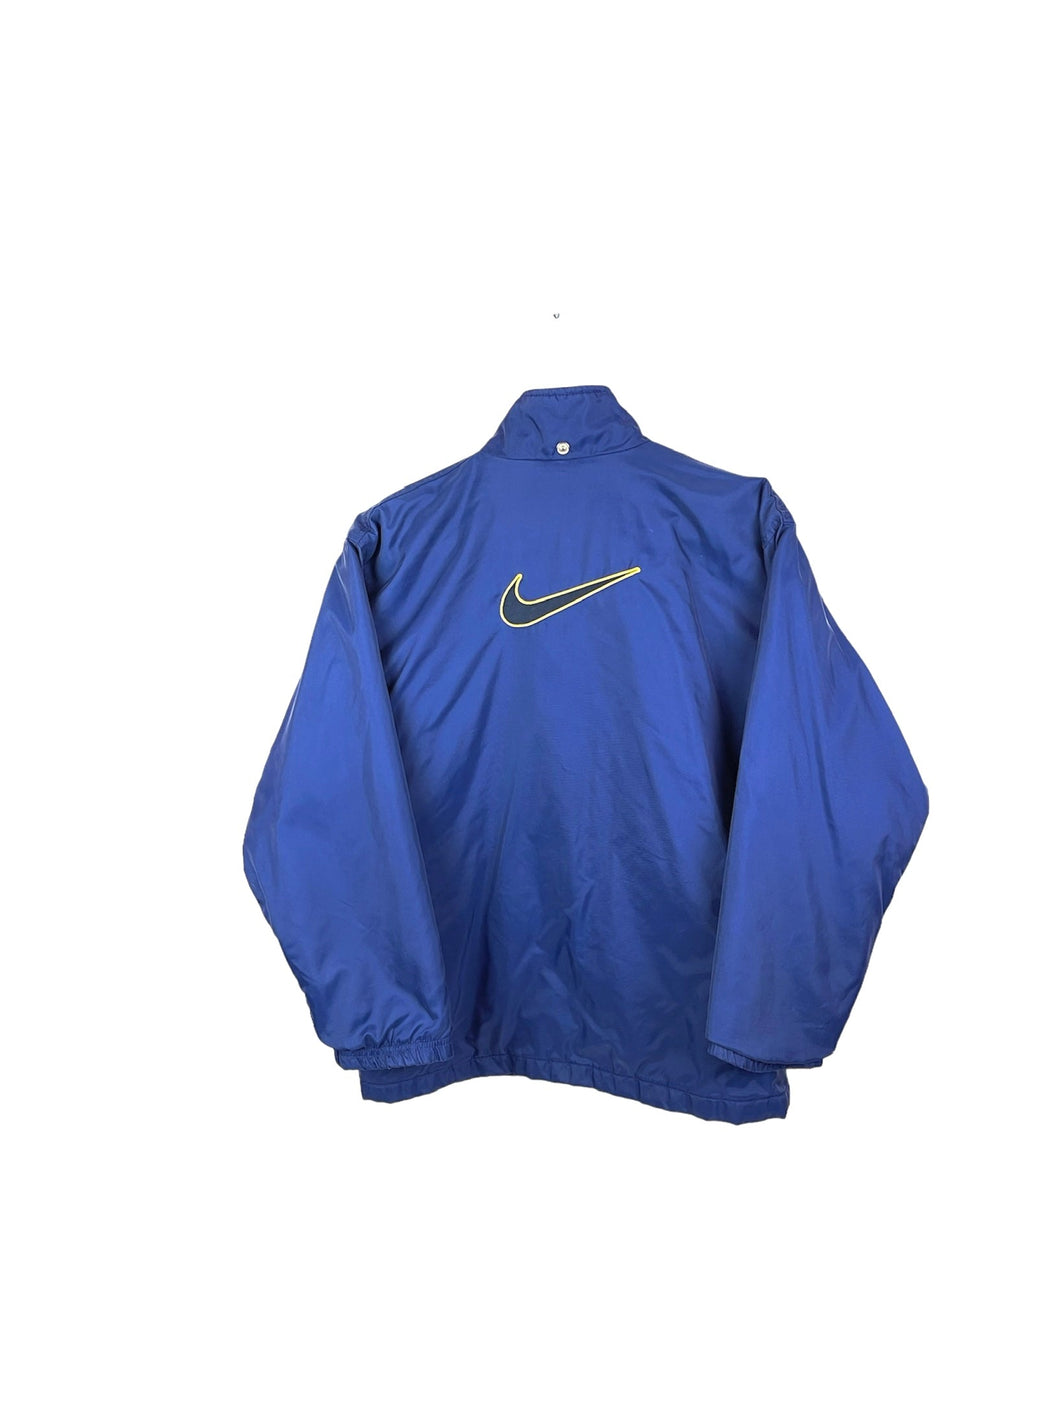 Nike Coat - XSmall